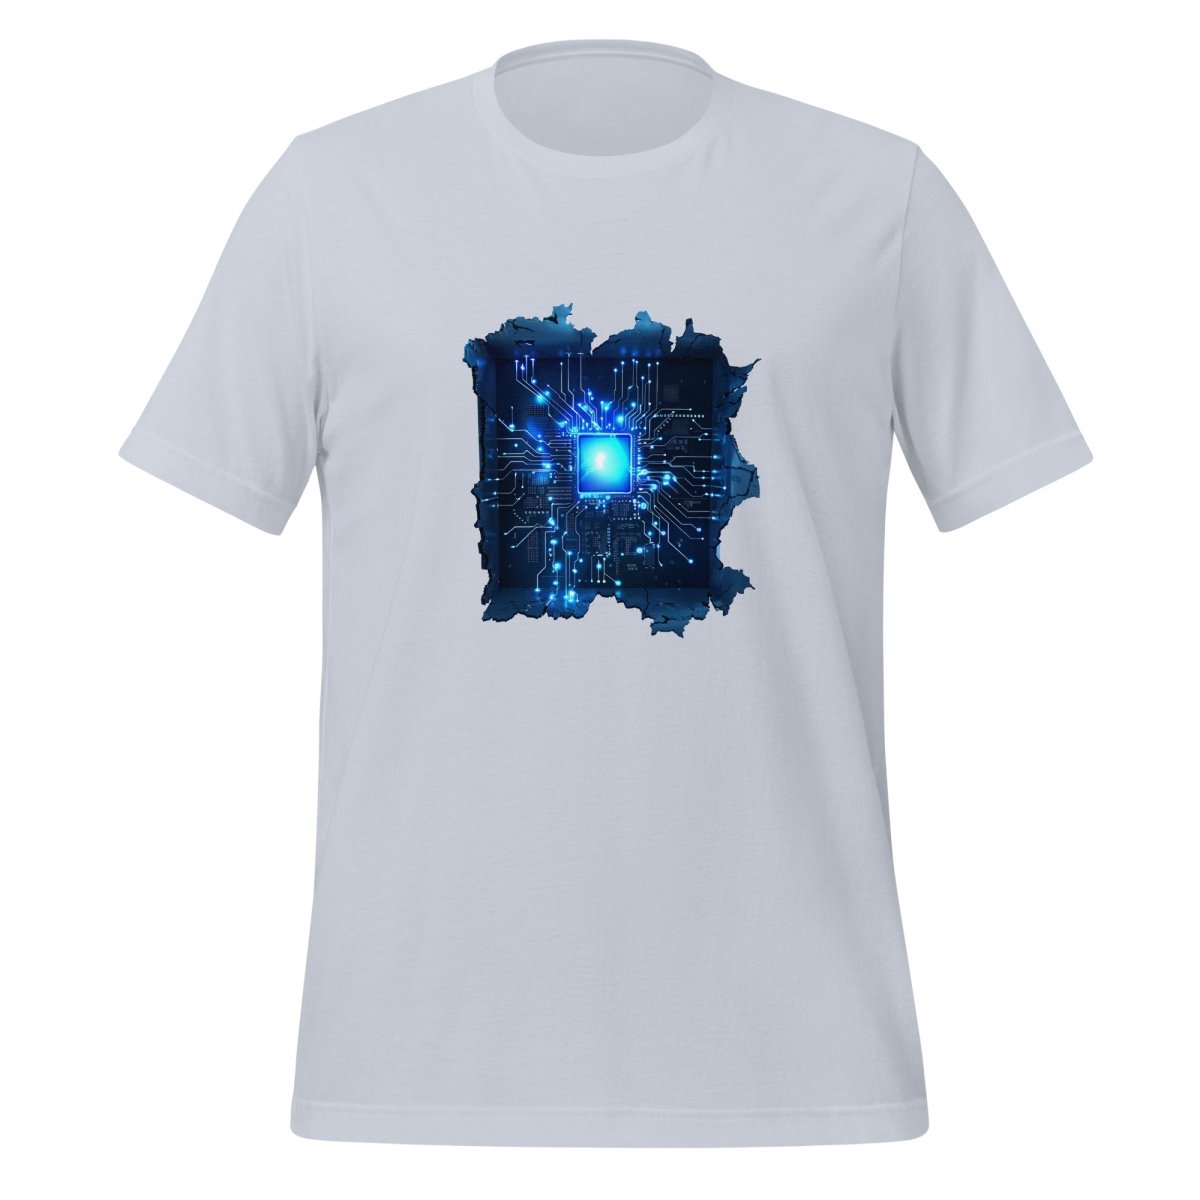 CPU Heart T - Shirt (unisex) - Light Blue - AI Store